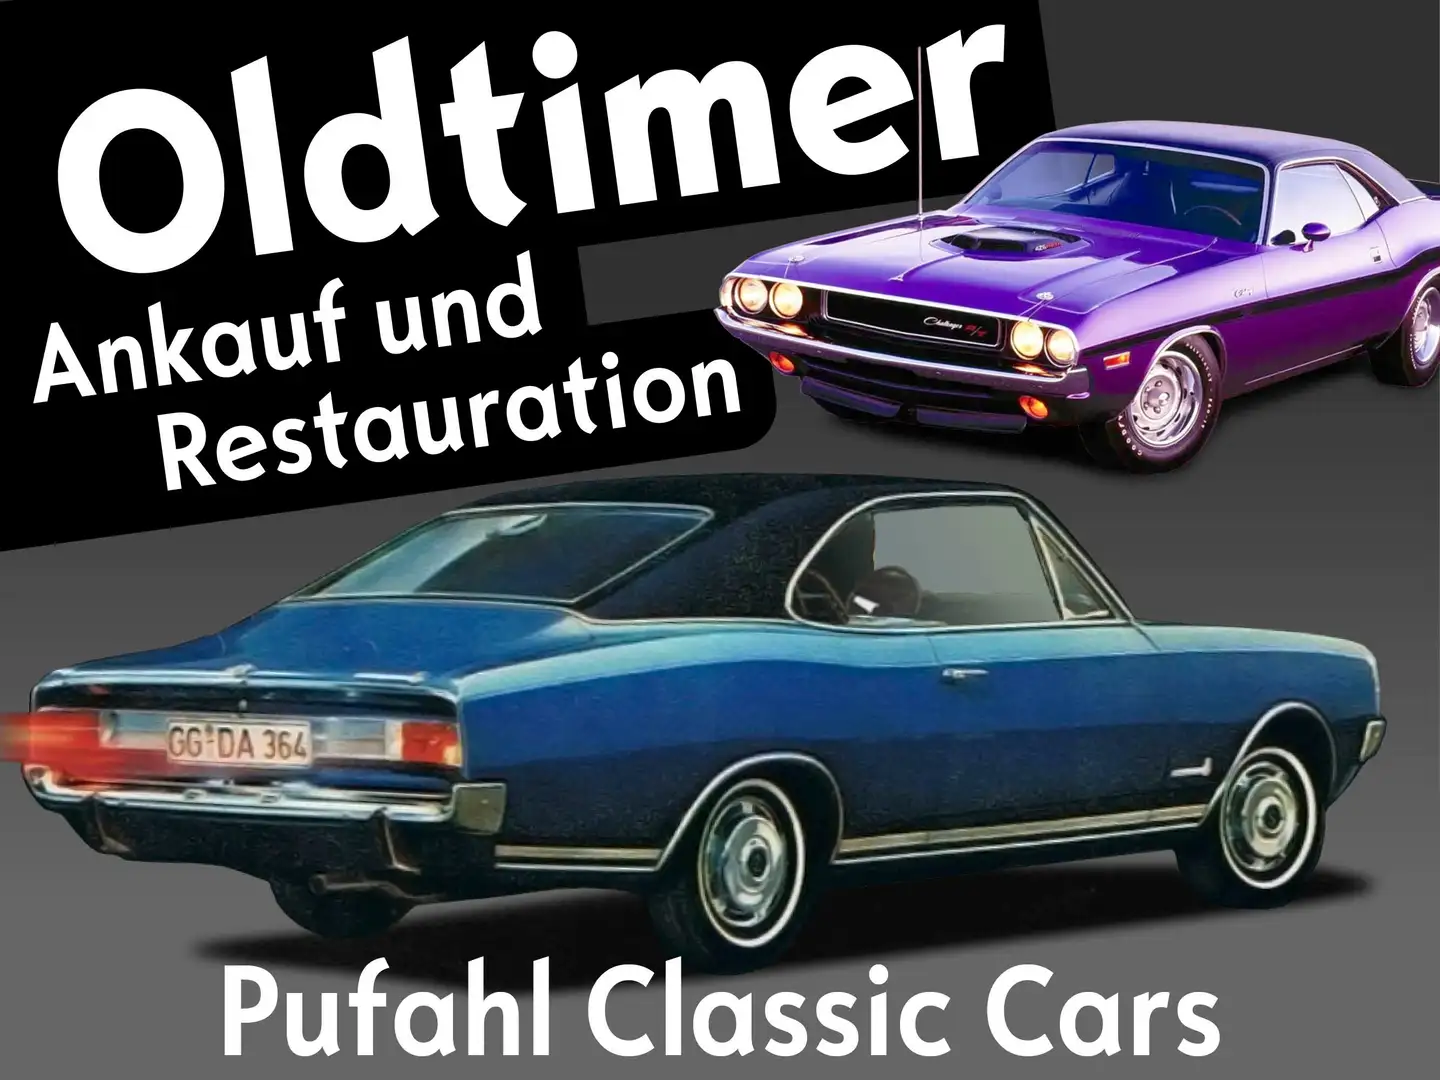 Pontiac Firebird Pufahl Classic Cars Ankauf und Restauration Nero - 1